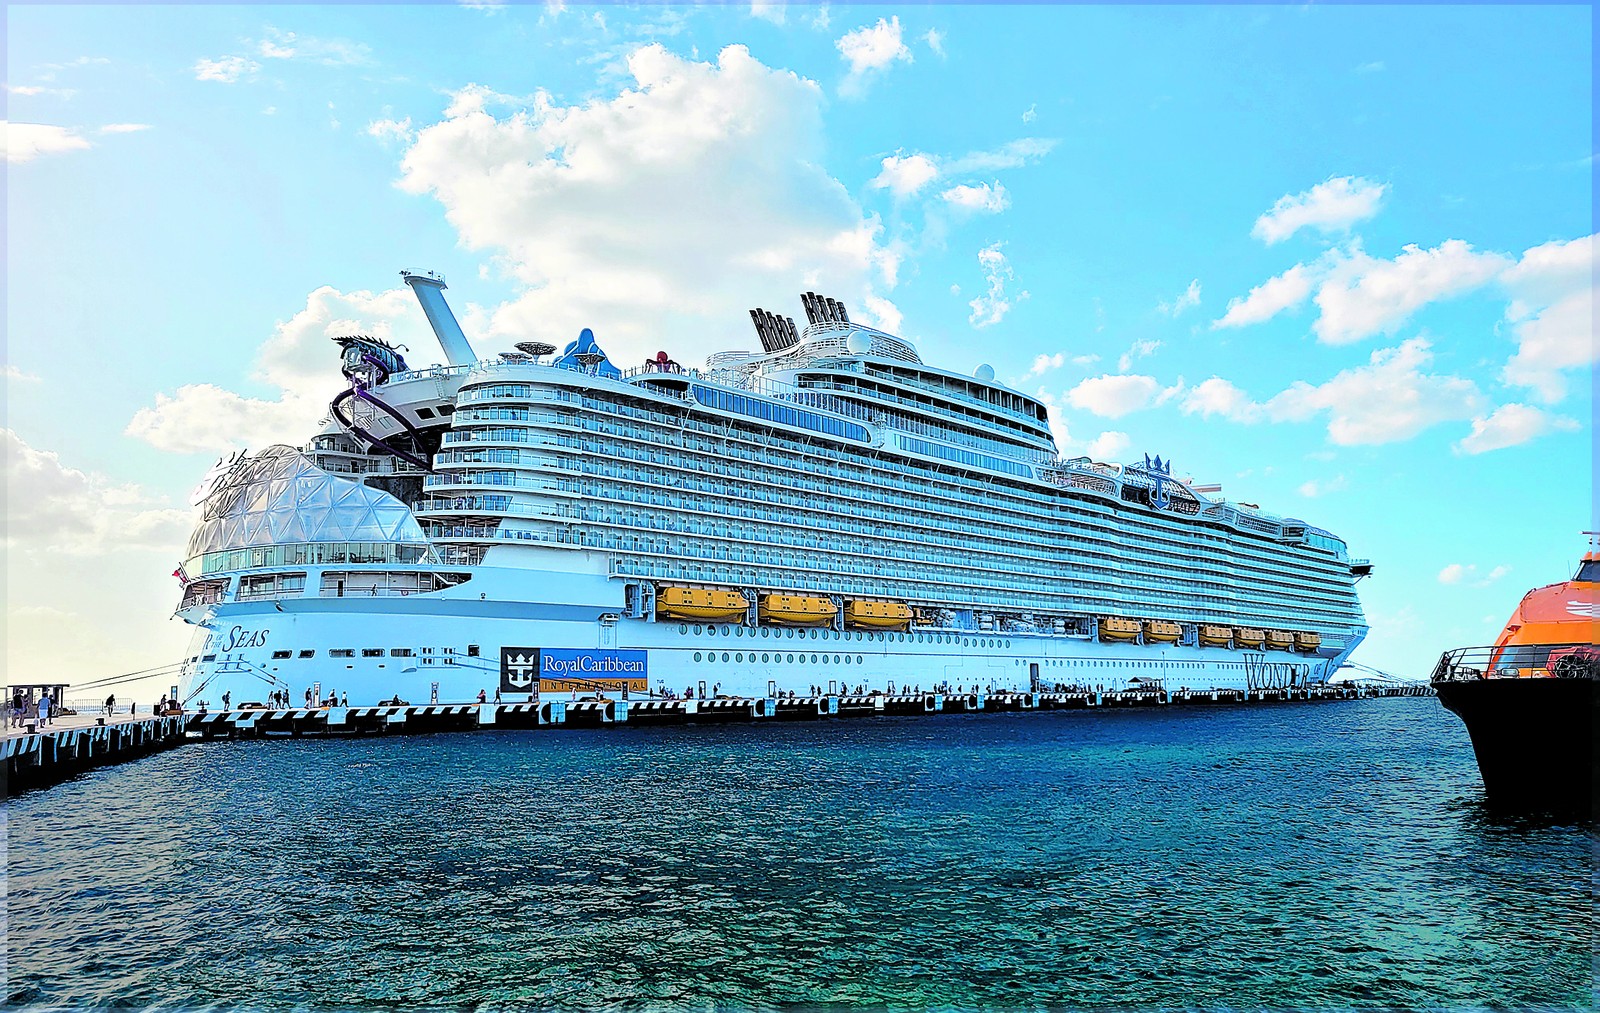 Navio Wonder of the Seas, da Royal Caribbean, o maior da indústria de cruzeiros, durante uma parada no porto de Cozumel, no México — Foto: Eduardo Maia / O Globo